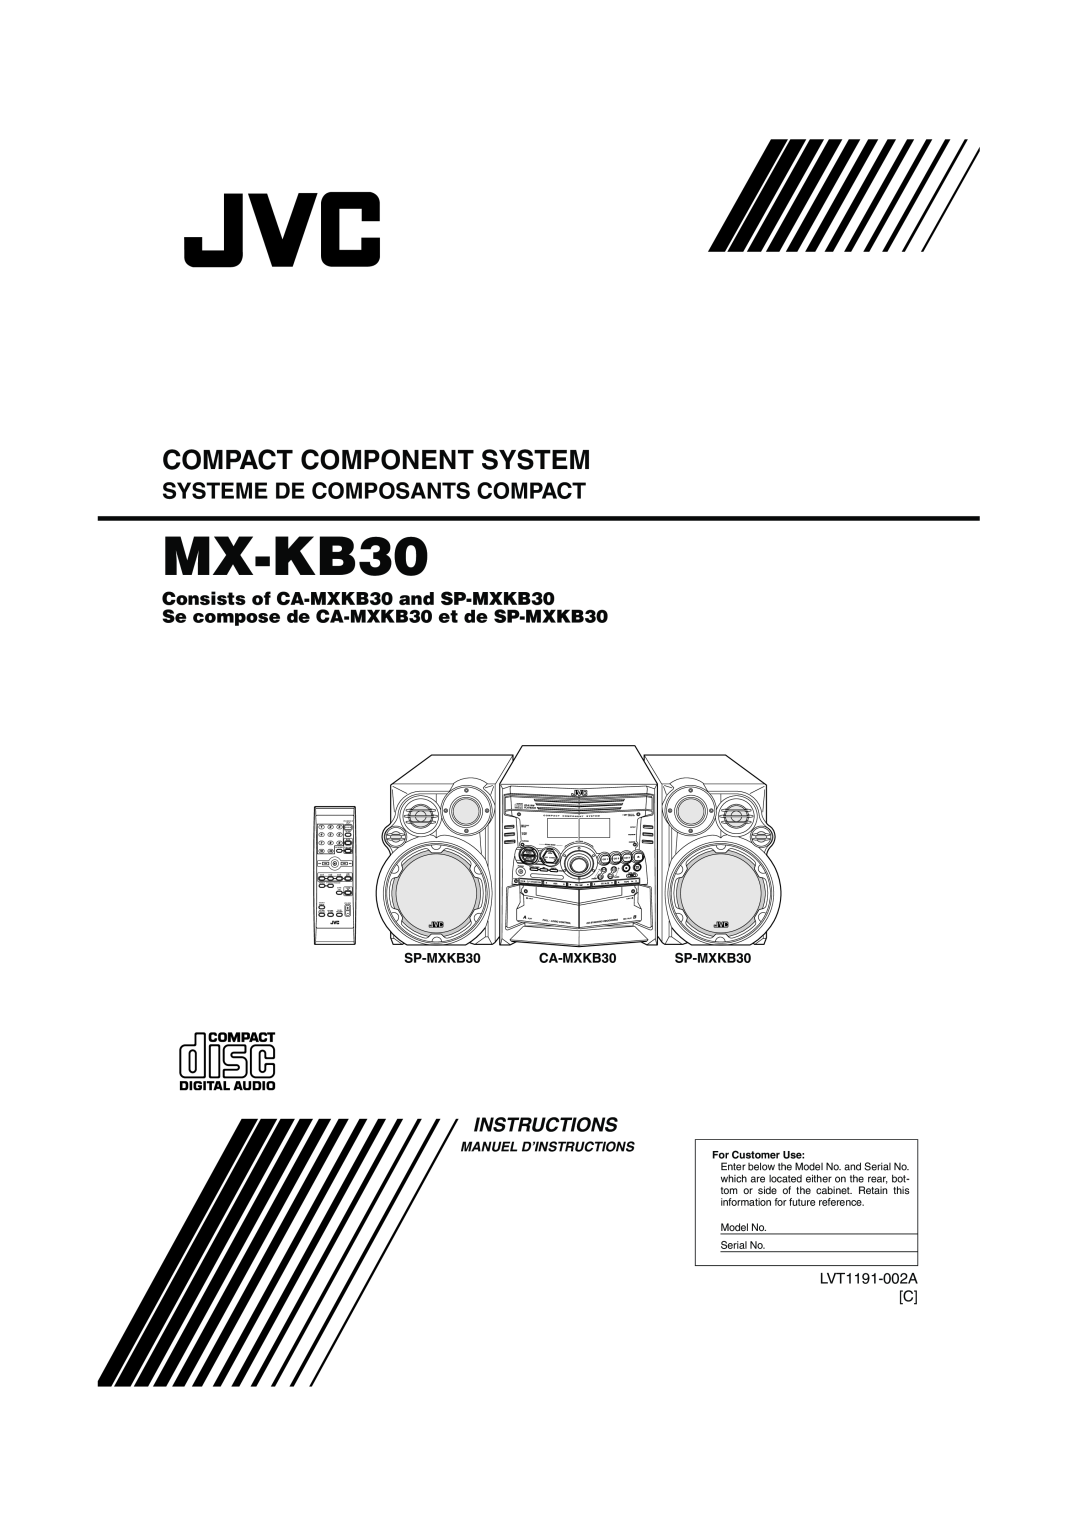 JVC MX-KB30 Se compose de CA-MXKB30et de SP-MXKB30, Compact Component System, Systeme De Composants Compact, Instructions 